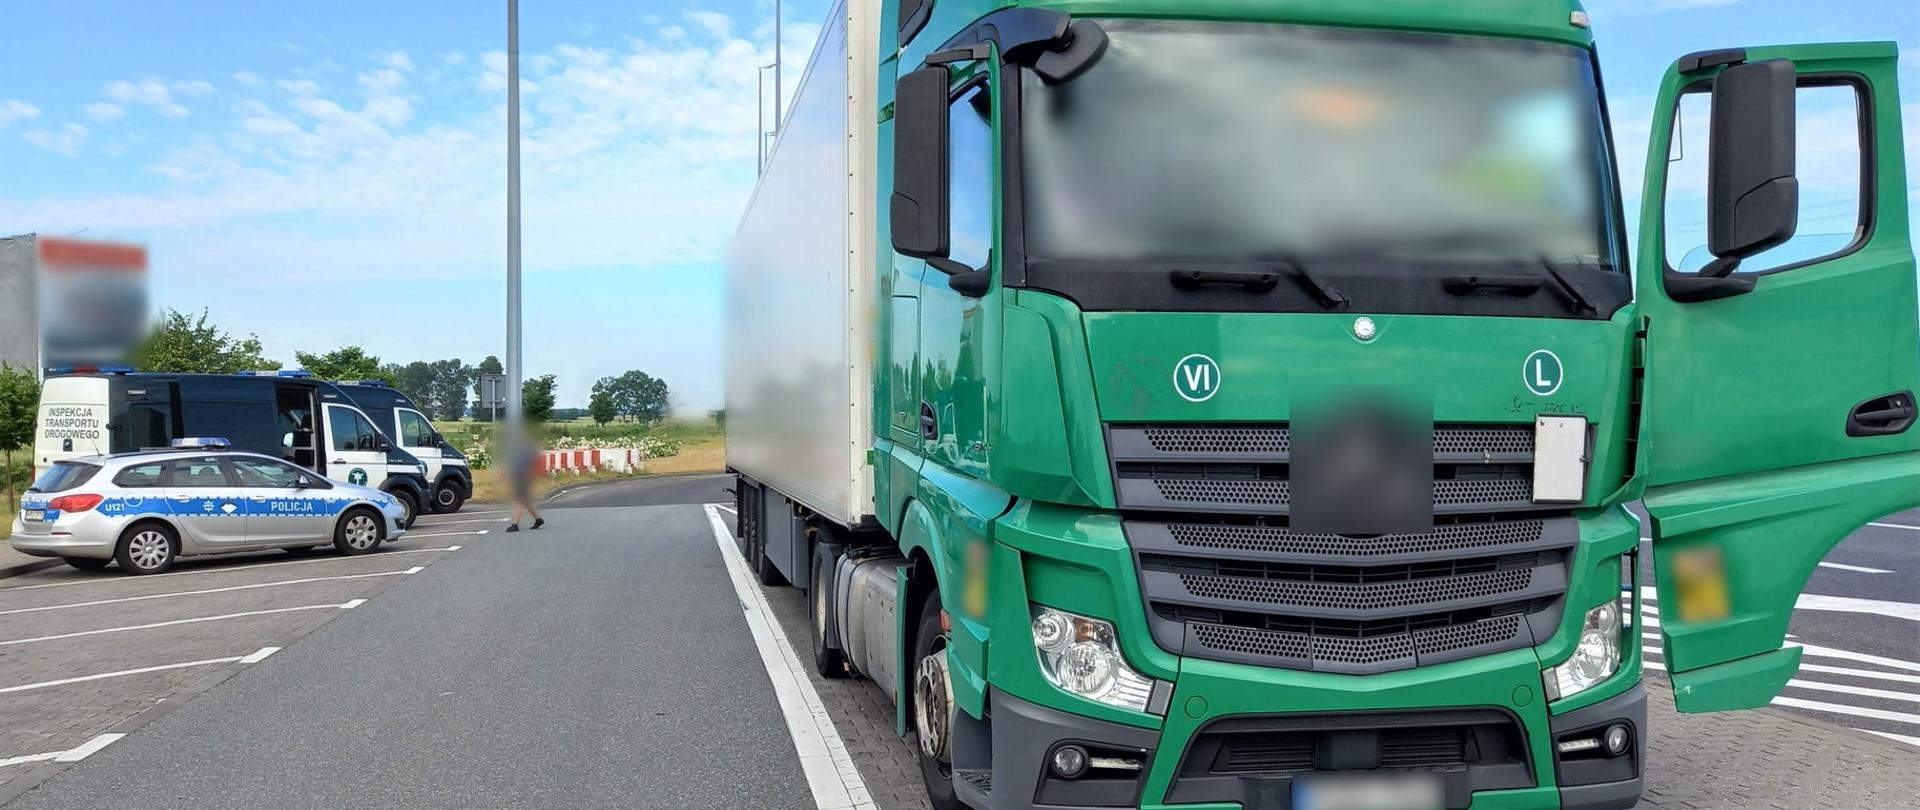 Miejsce kontroli ciężarówki zatrzymanej przez patrol wielkopolskiej Inspekcji Transportu Drogowego podczas wakacyjnych zakazów w ruchu na autostradzie A2 koło Poznania.